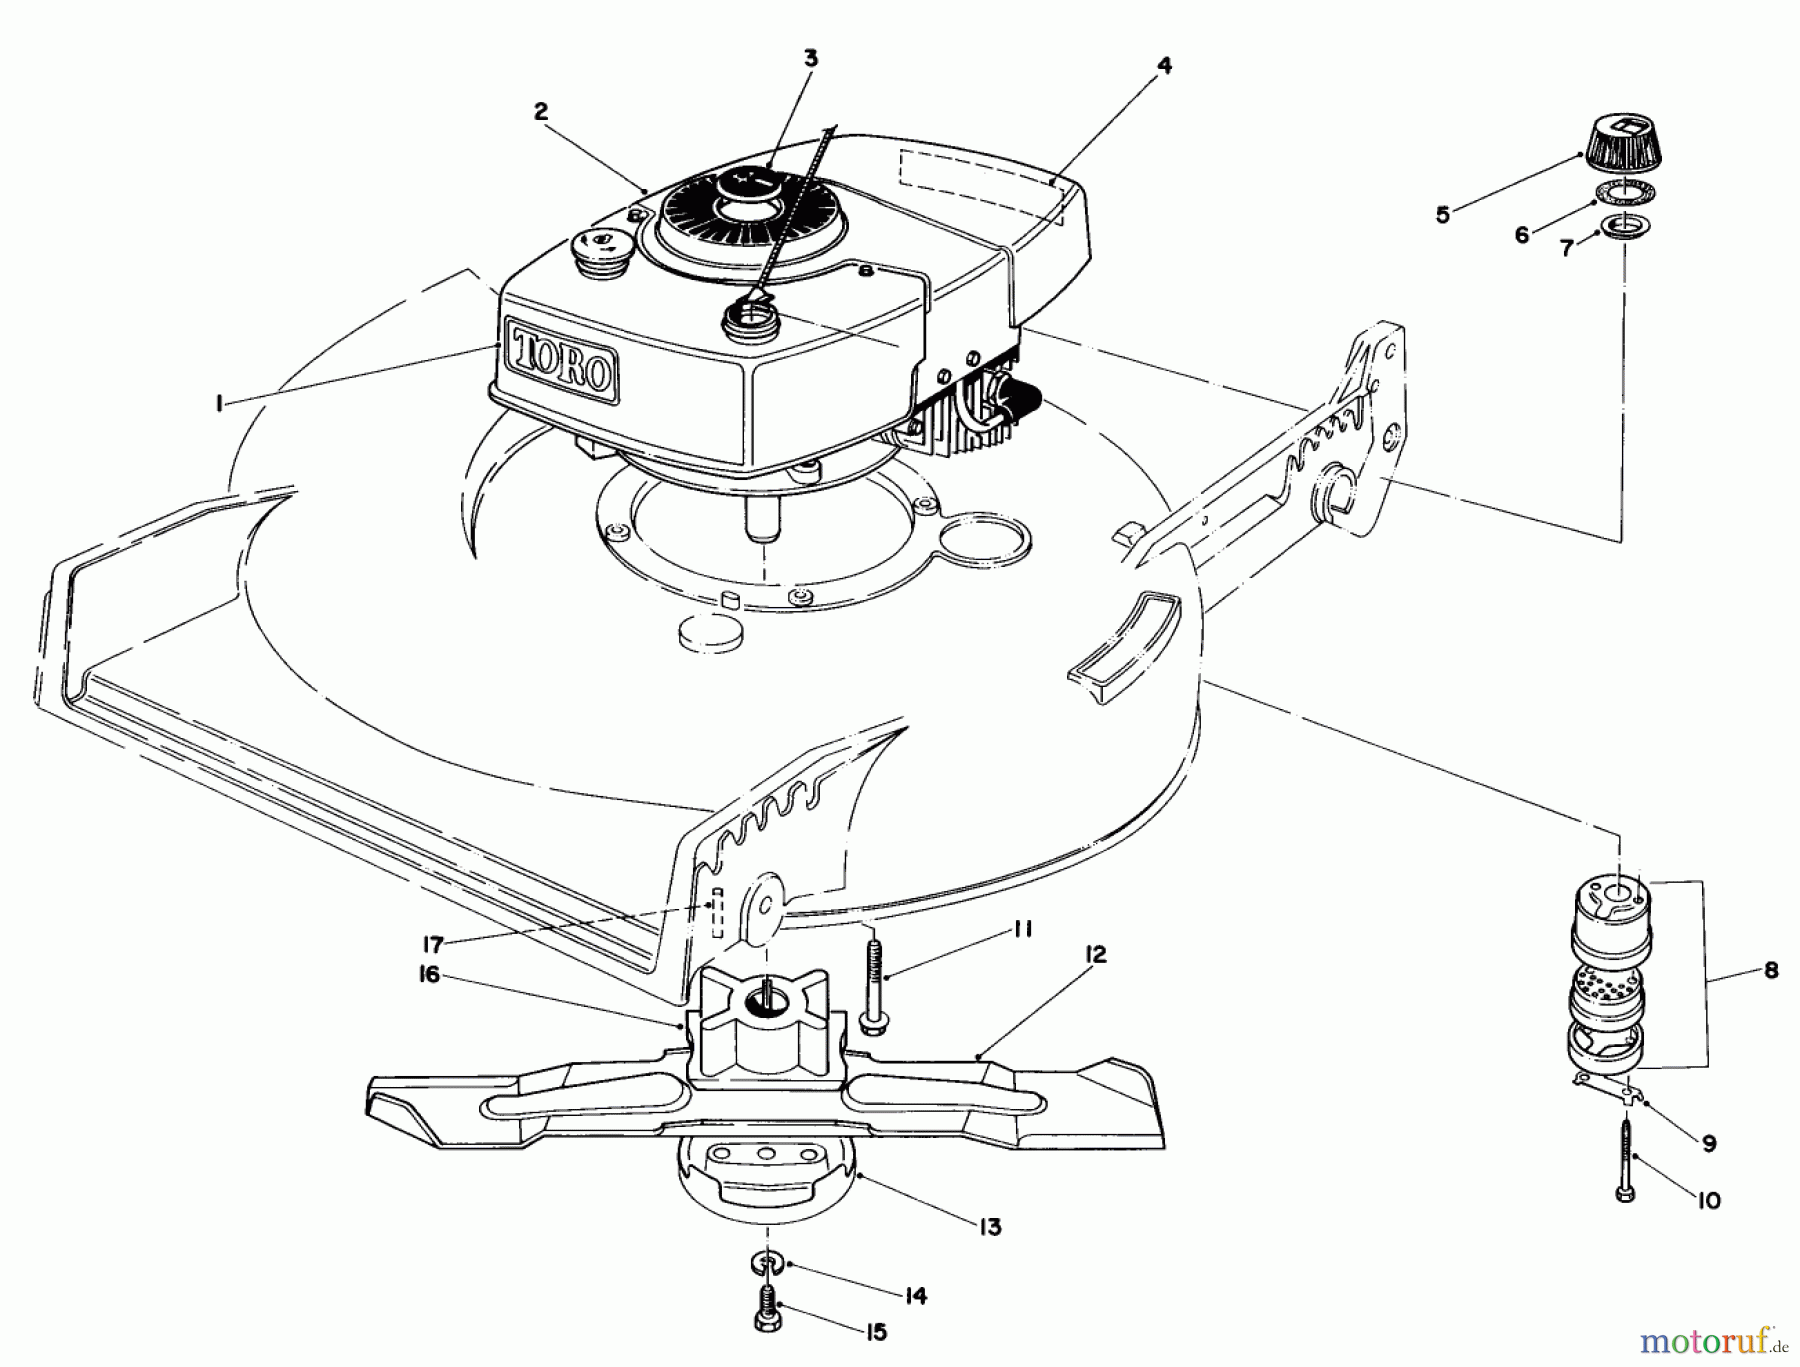  Toro Neu Mowers, Walk-Behind Seite 1 20570 - Toro Lawnmower, 1983 (3000001-3999999) ENGINE ASSEMBLY